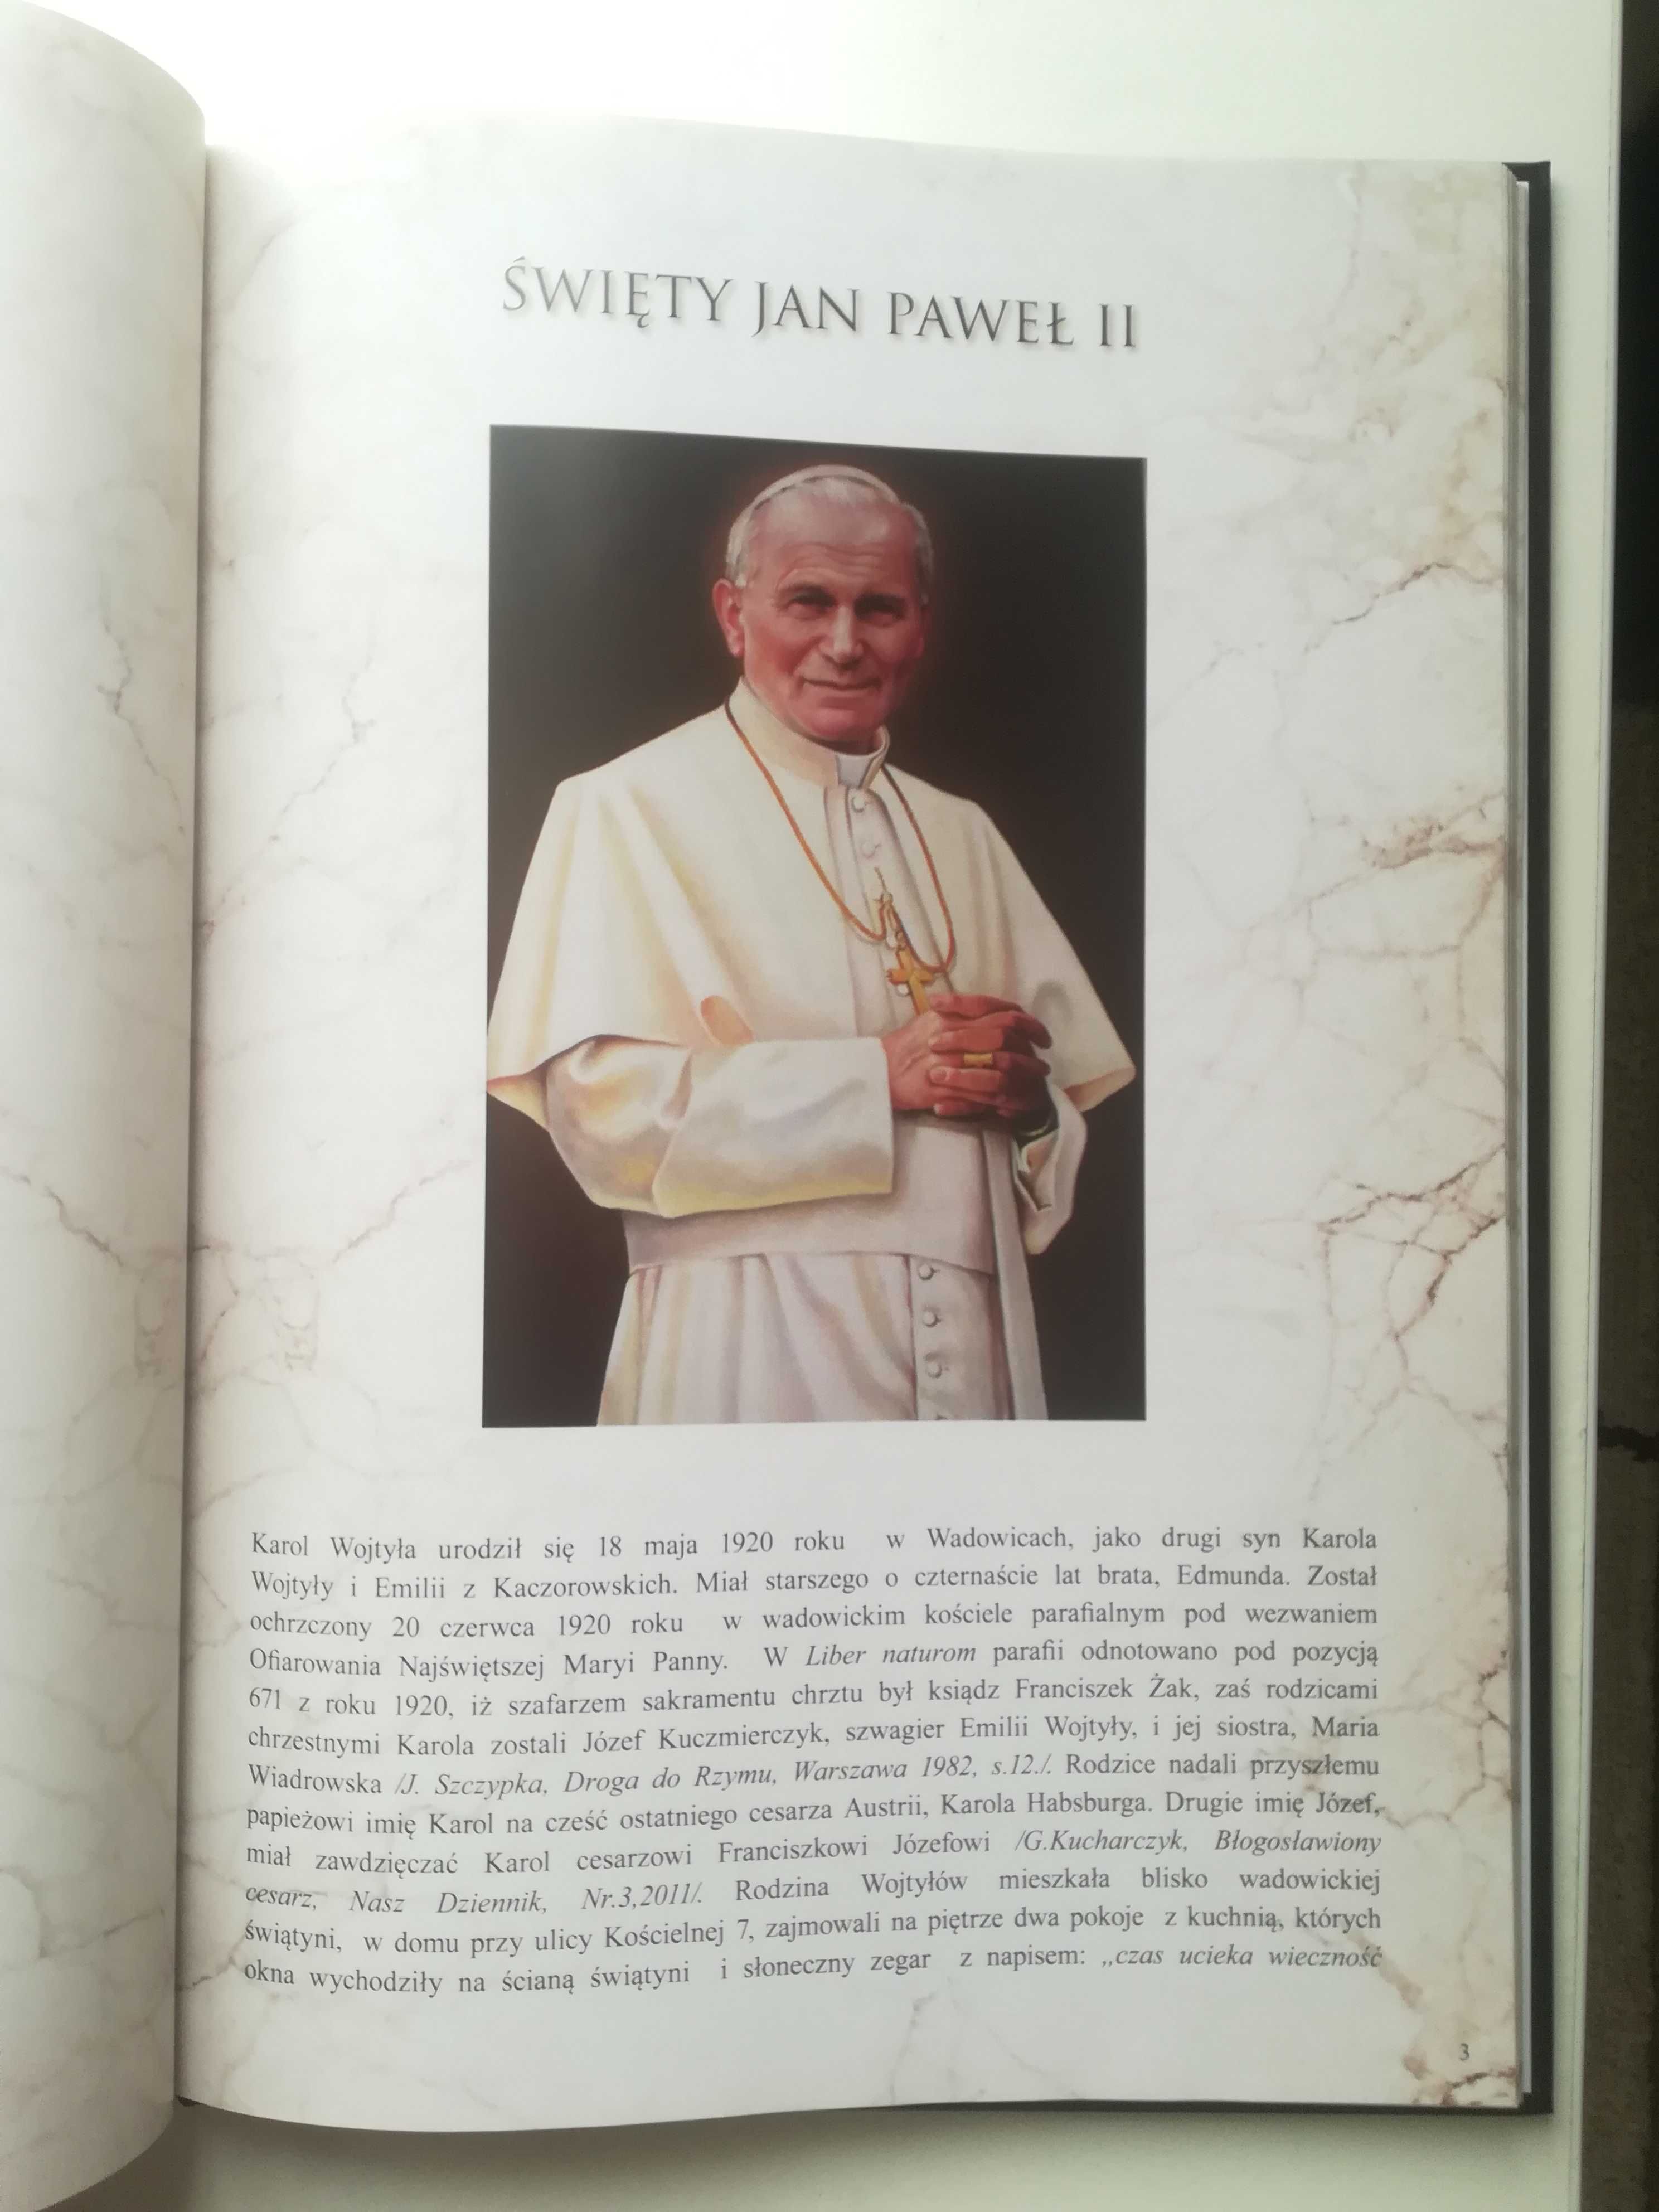 Wielkie postaci kościoła rzymskokatolickiego / papież Jan Paweł II